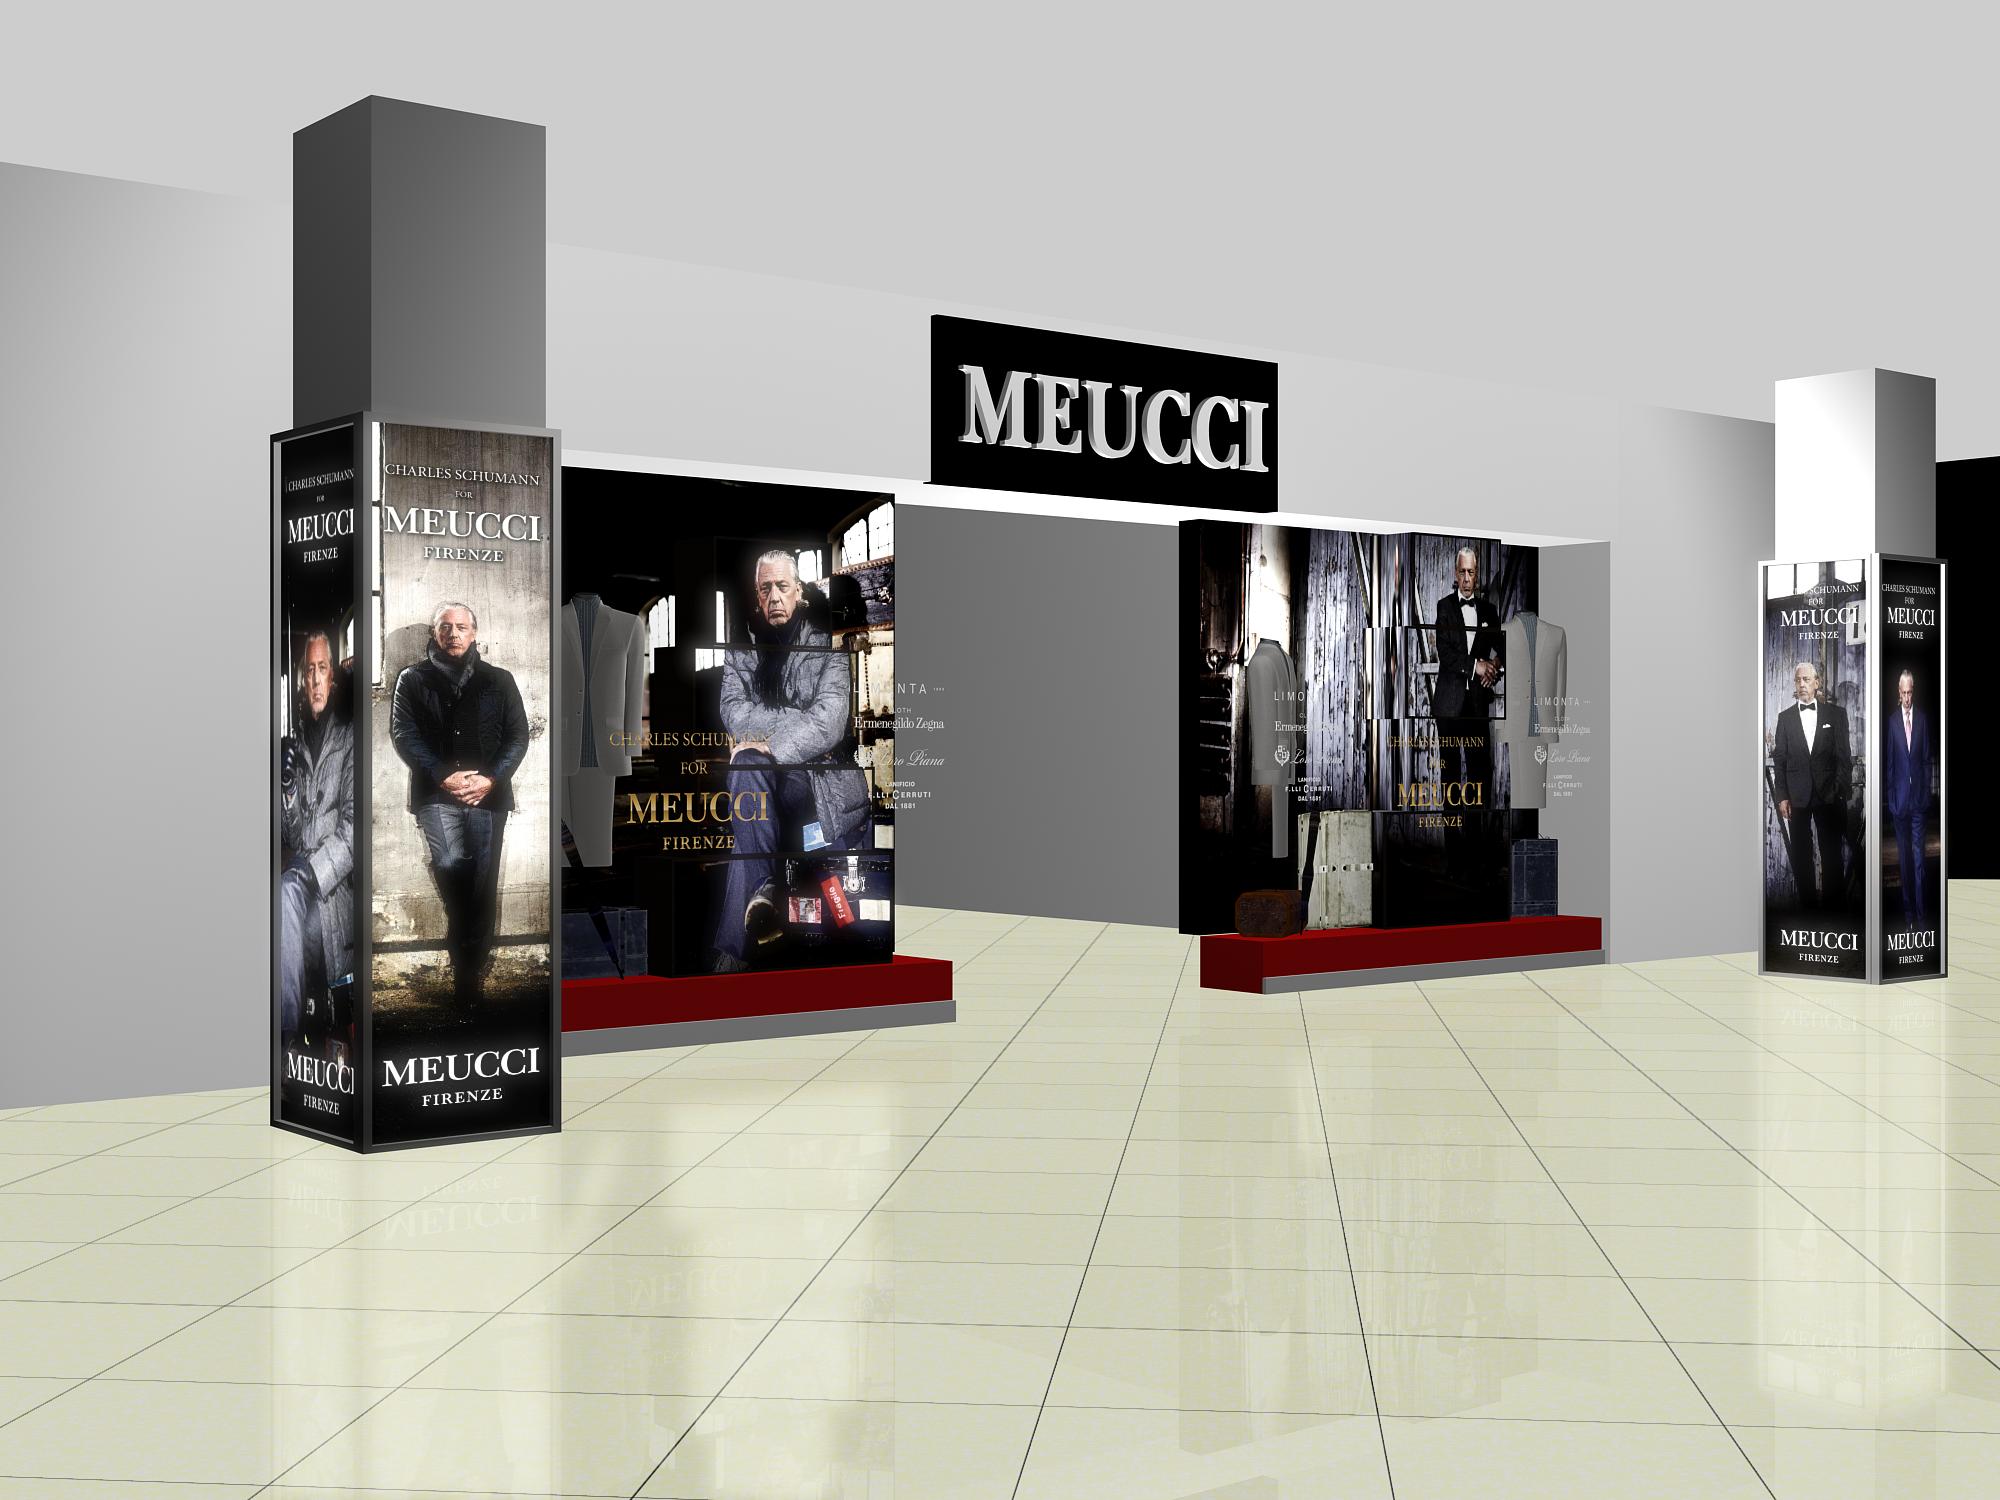 Меуччи мужская одежда официальный сайт москва магазины каталог с ценами